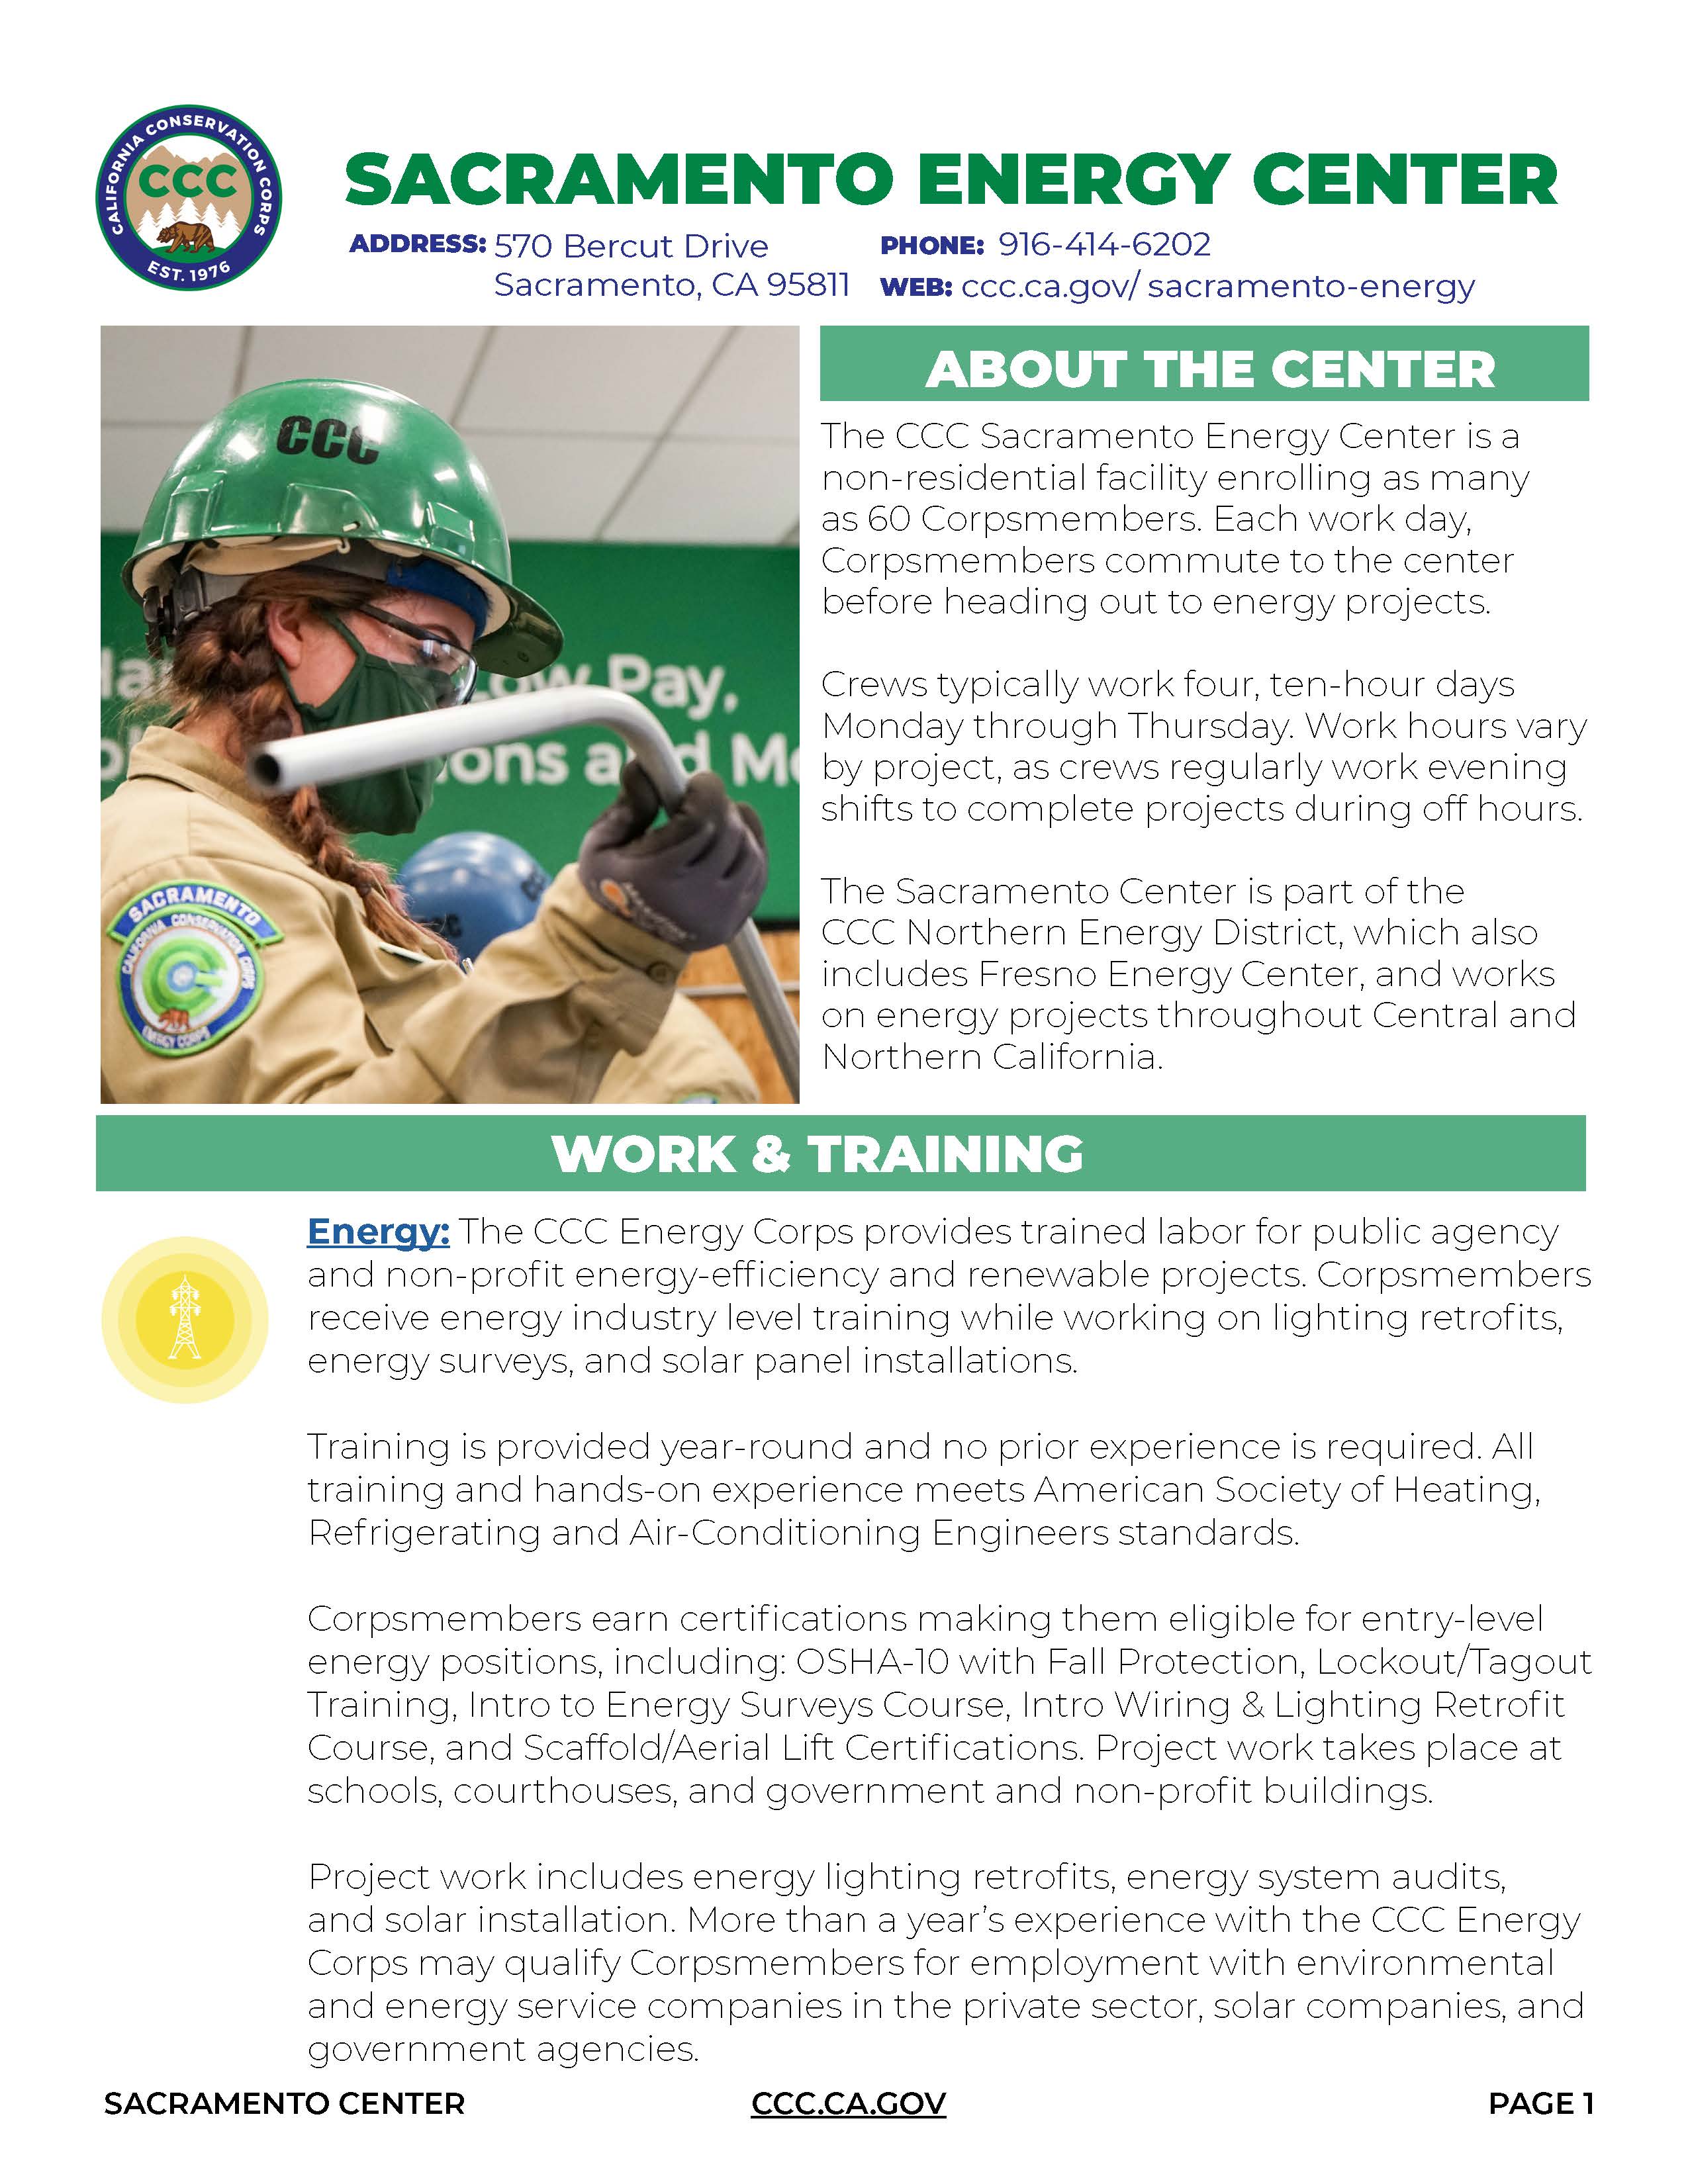 Image of Sacramento Energy Center Fact Sheet